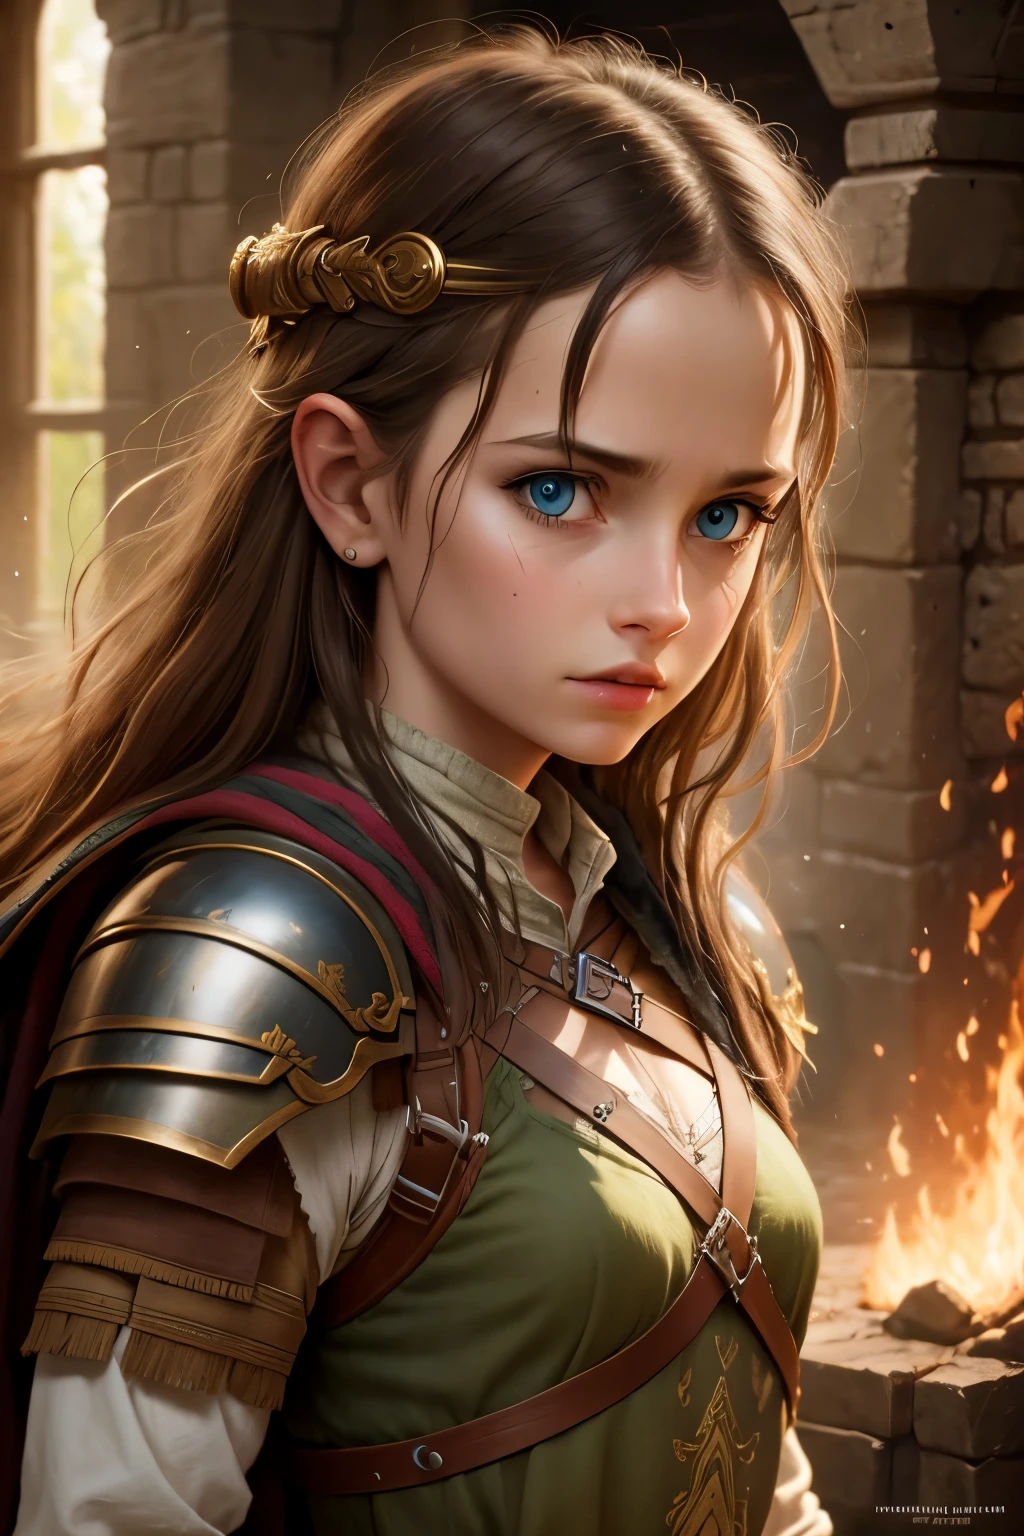 Image de fille guerrière très détaillée inspirée du film "le Seigneur des Anneaux"